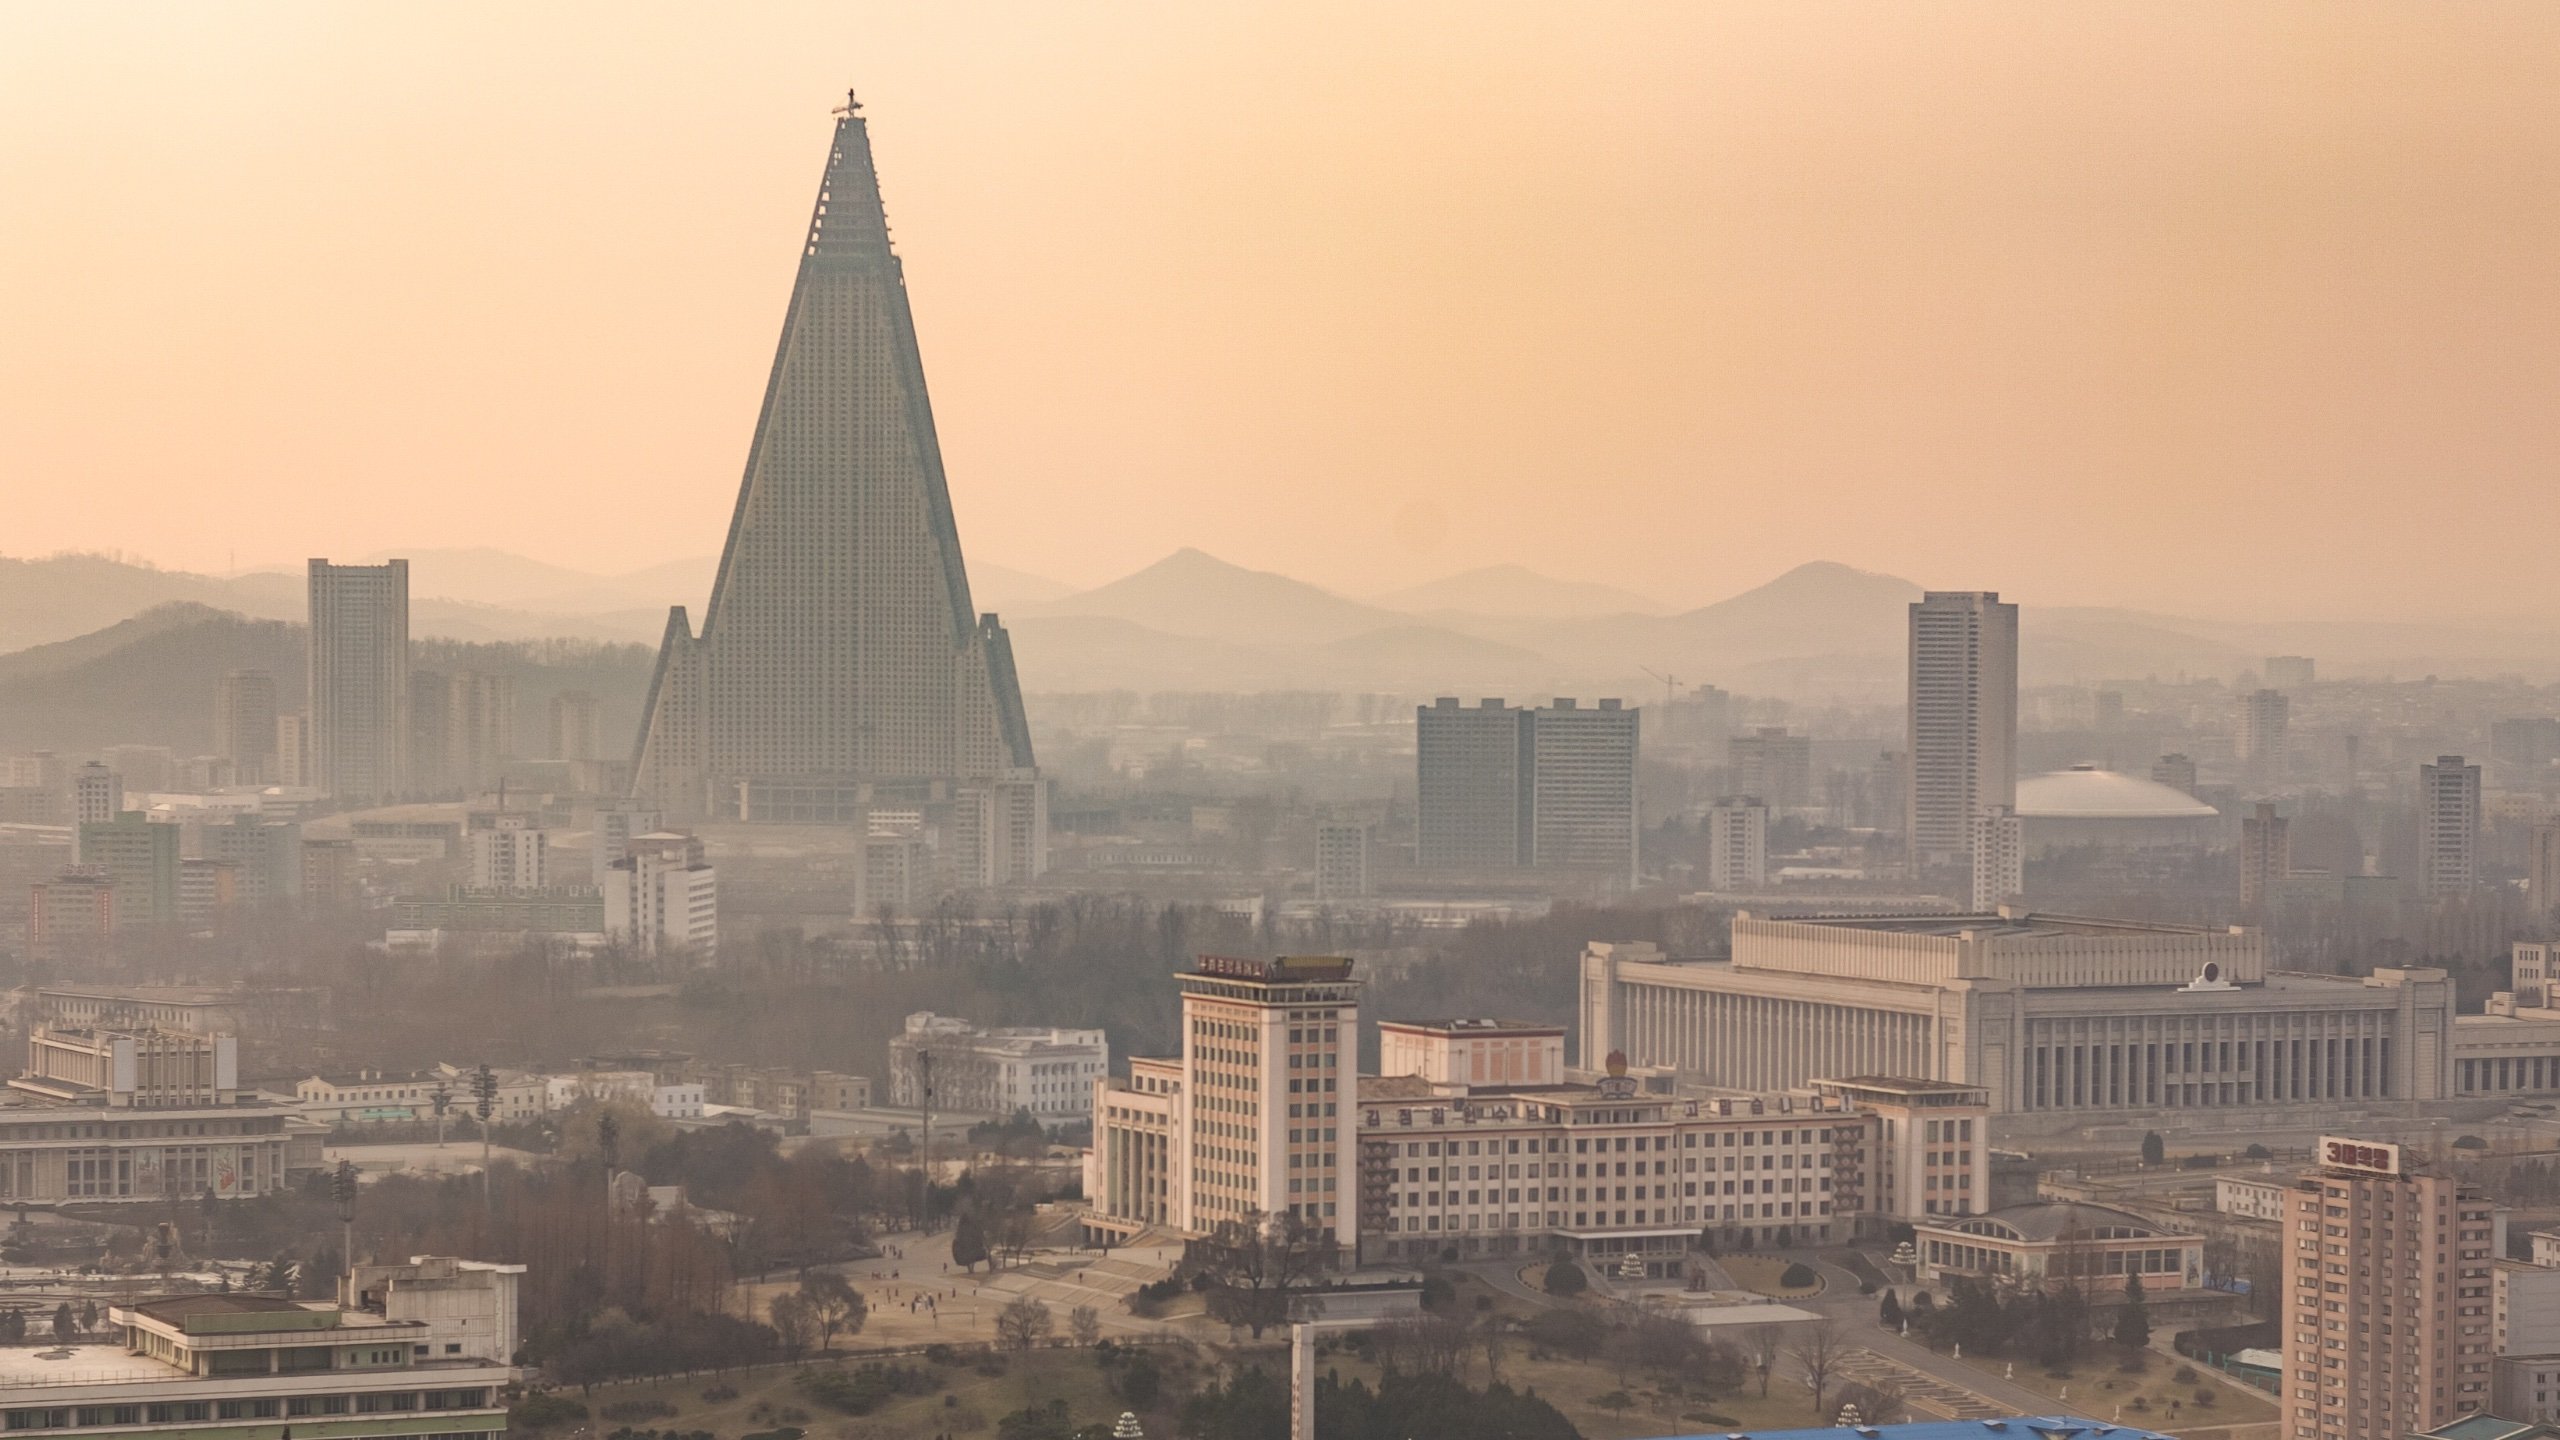 Согласно отчету, рост ИИ в Северной Корее вызывает беспокойство